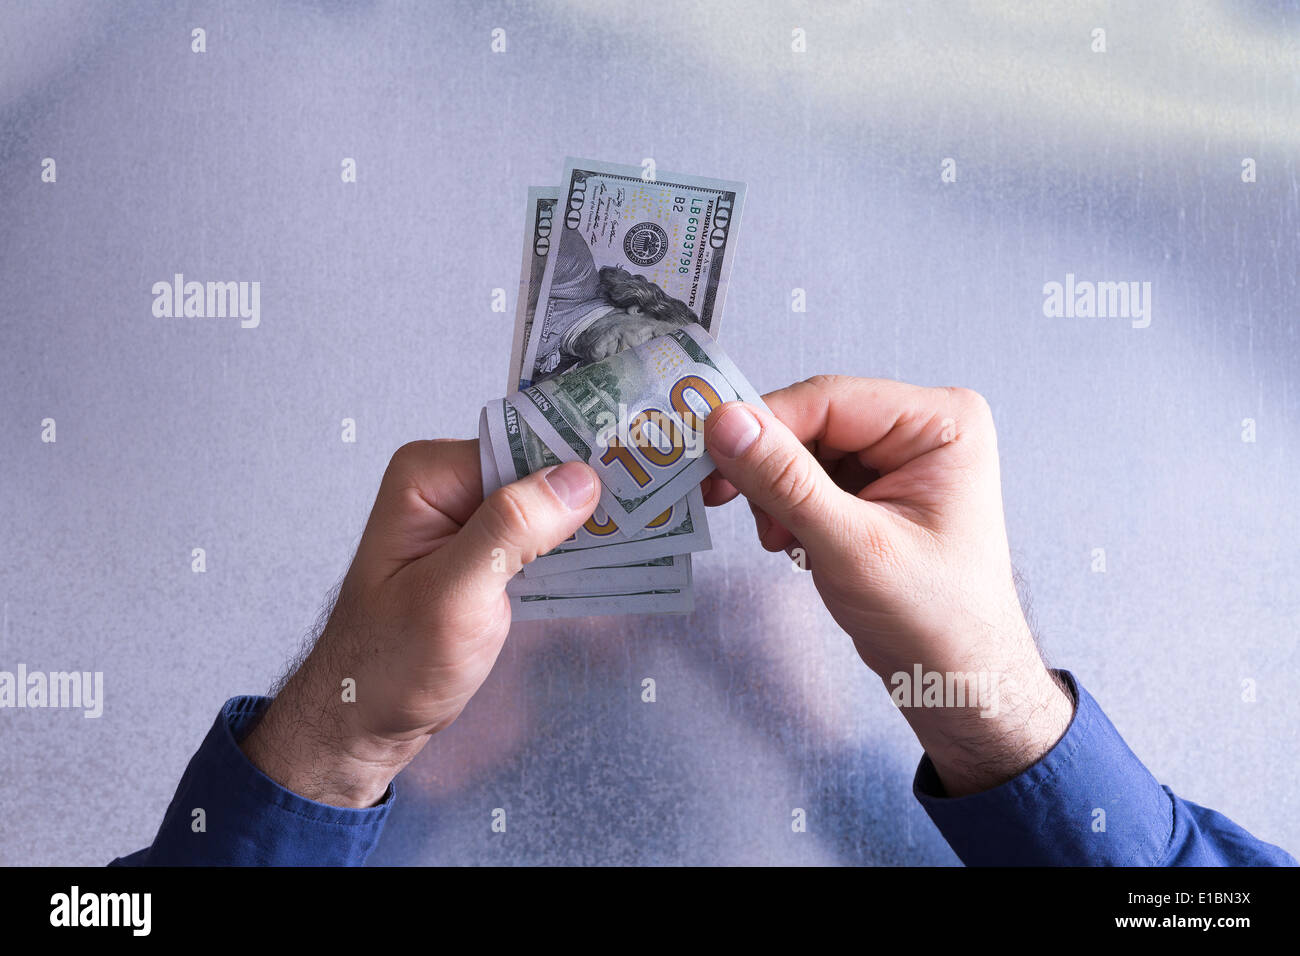 L'homme compte et le paiement de 100 dollars dans un concept financier et monétaire (vue de dessus avec seulement ses mains visible Banque D'Images